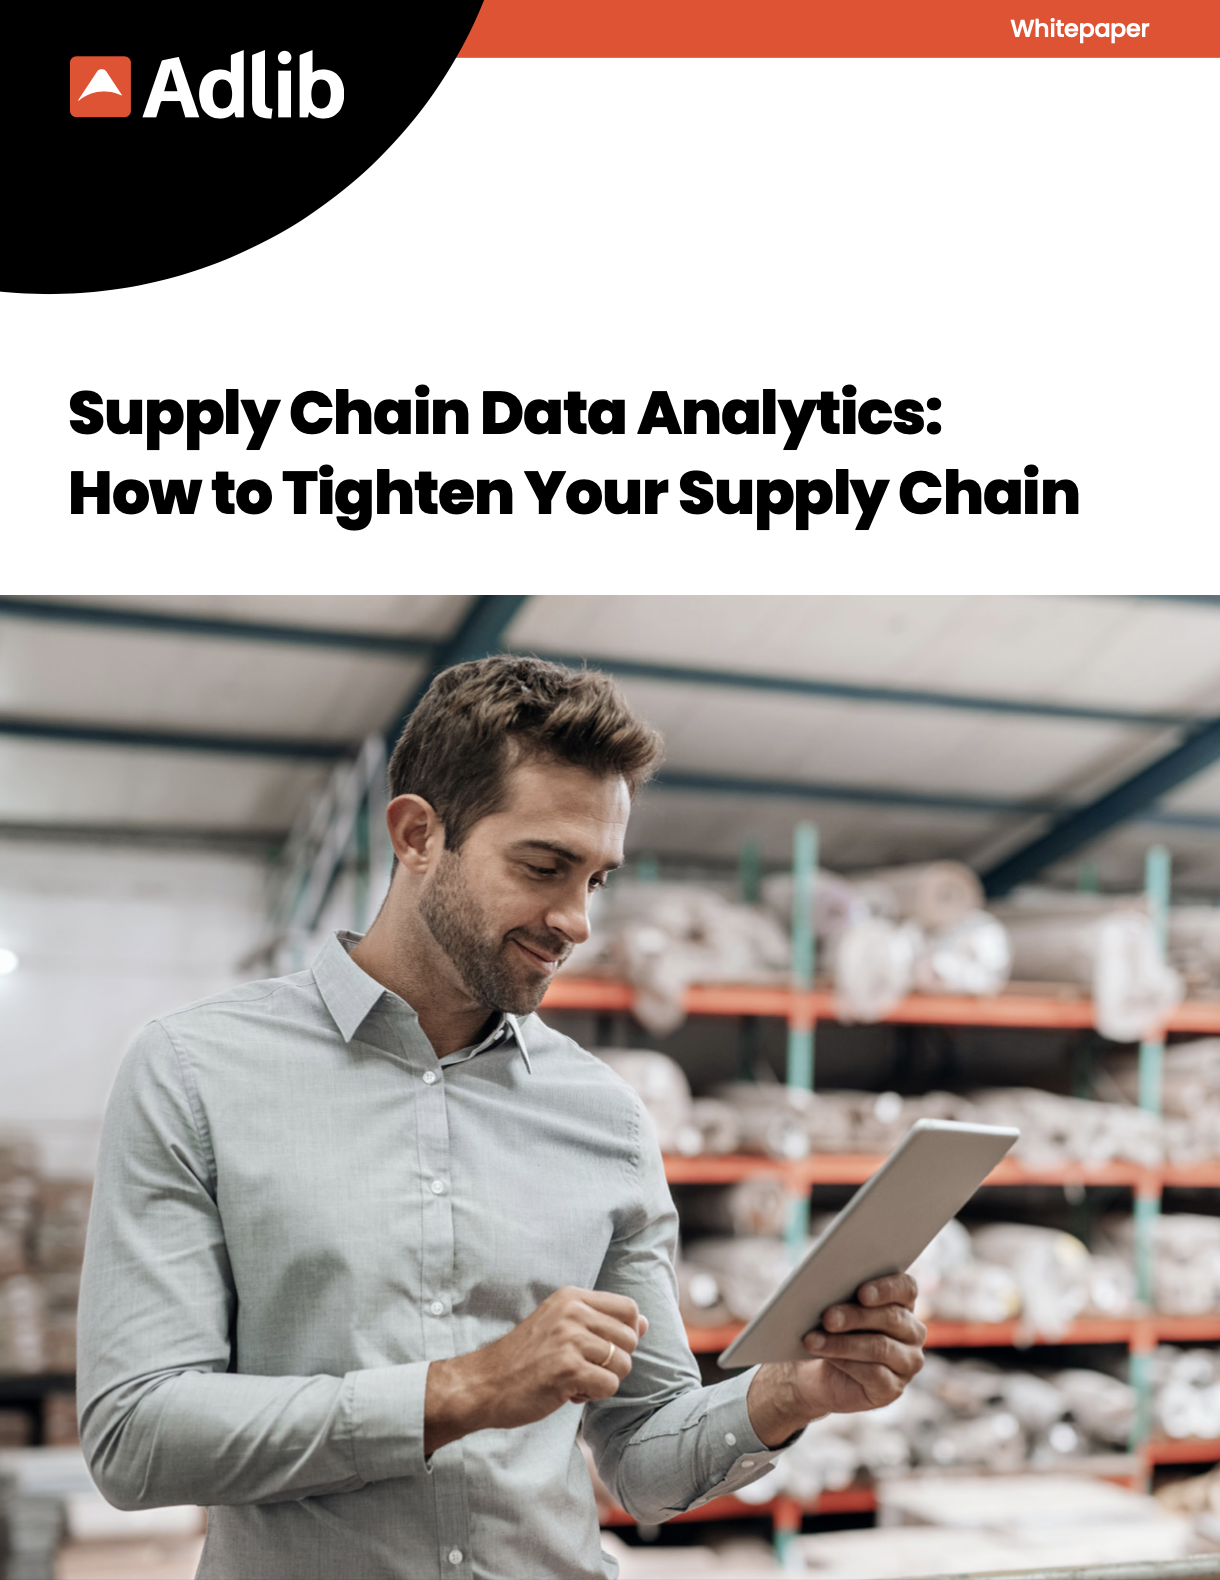 Supply Chain Data Analytics whitepaper cover